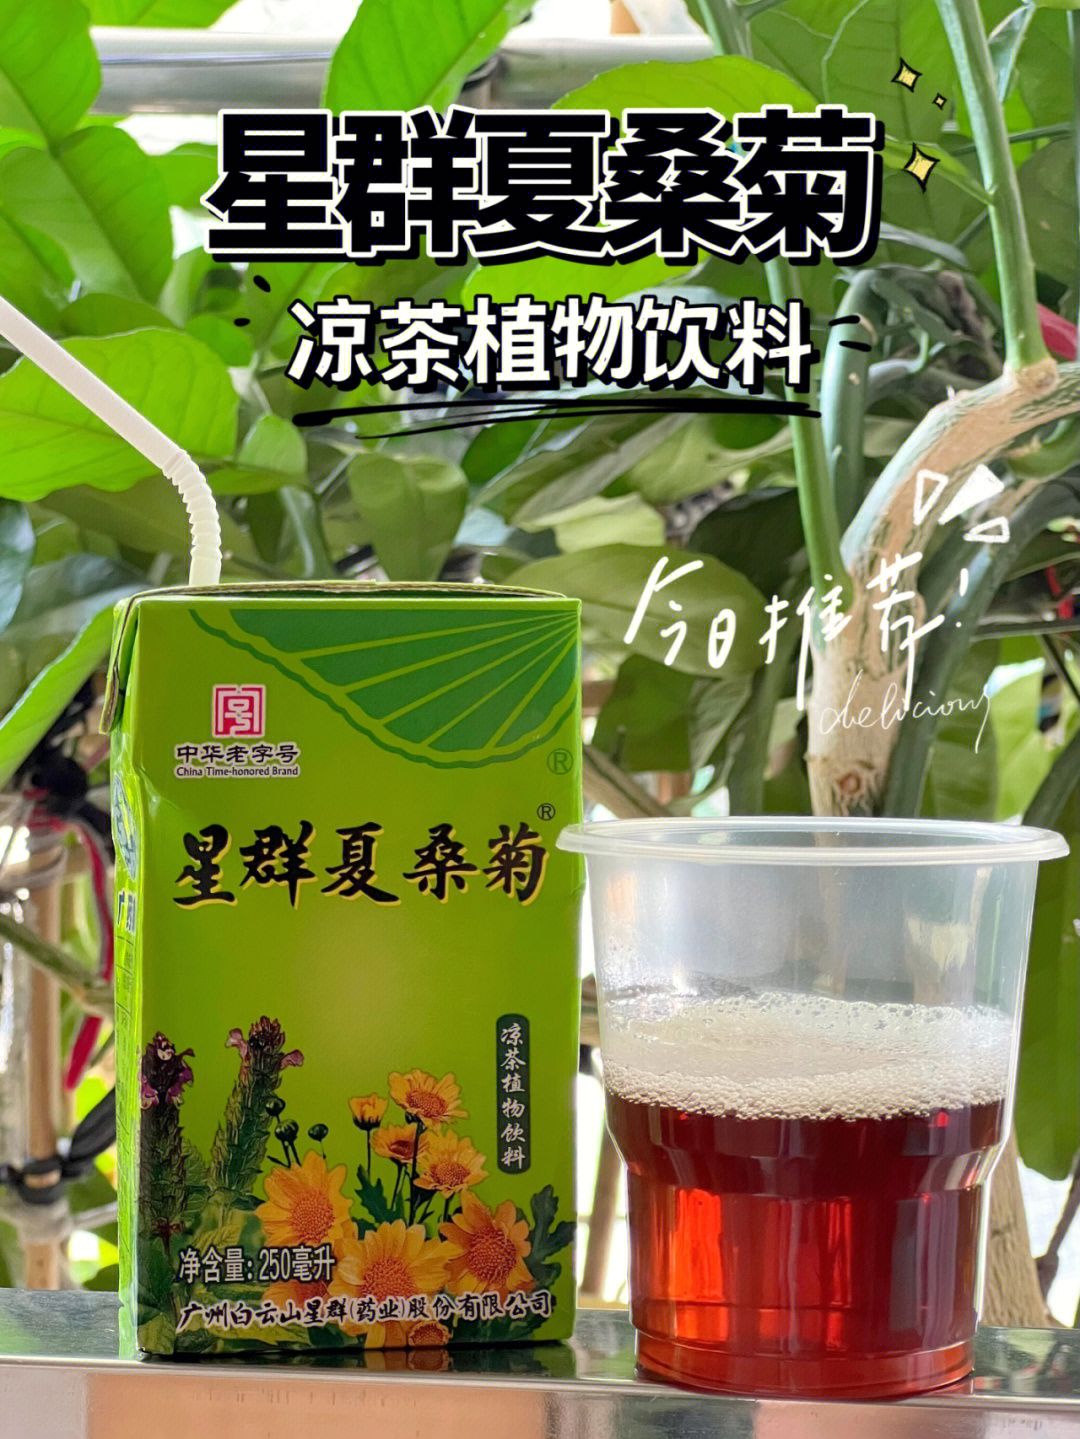 消暑饮品夏桑菊植物饮料